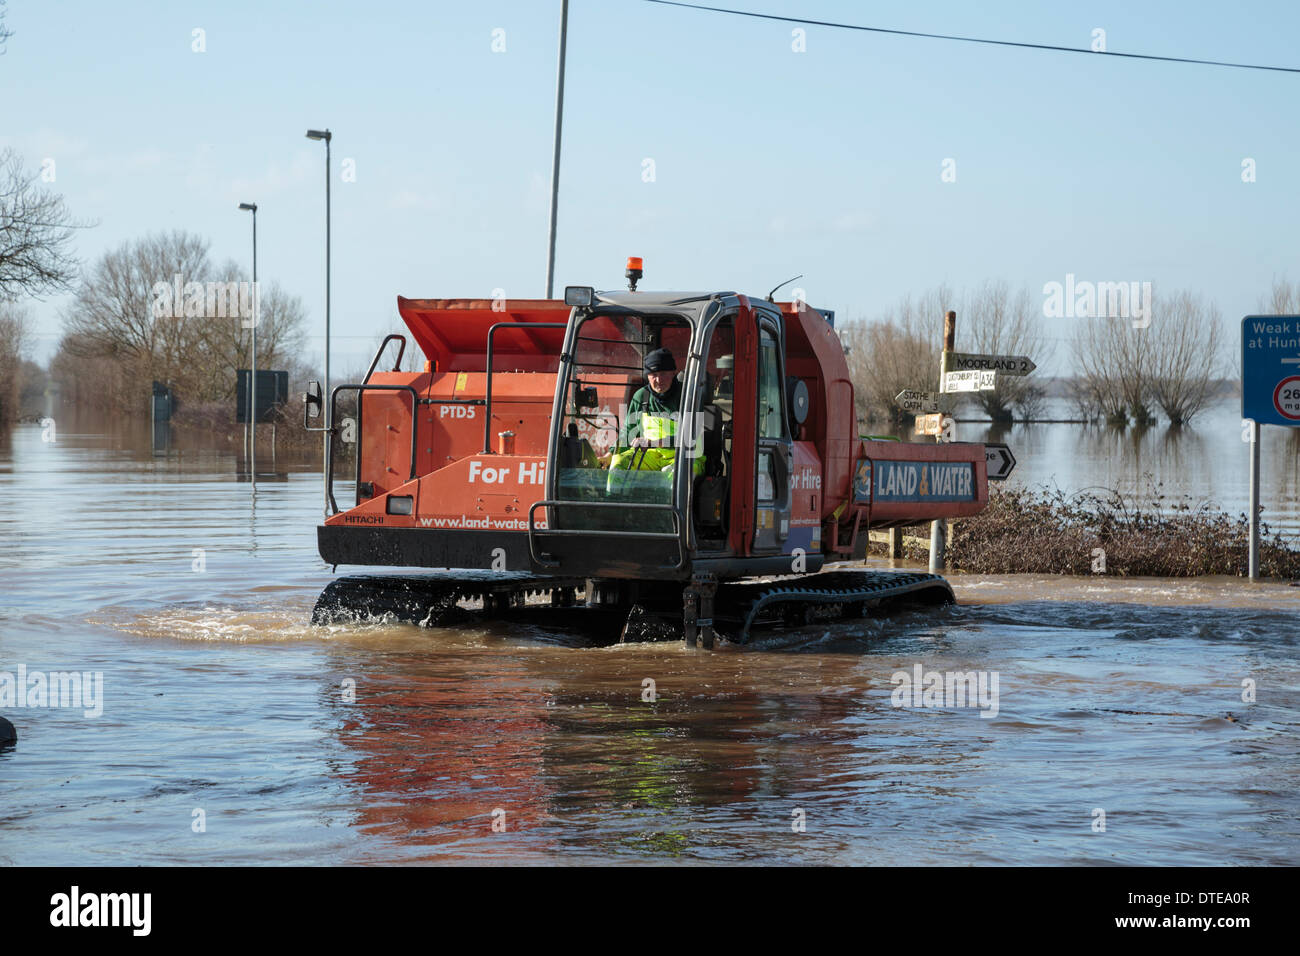 Burrowbridge, Reino Unido. 16 Feb, 2014. Los trabajadores hacen uso de vehículos especializados durante las fuertes inundaciones en los niveles Burrowbridge en Somerset, el 16 de febrero de 2014. Vehículos aptos para el uso en aguas profundas están siendo usados para eliminar obstáculos tales como los troncos de los árboles y postes de telégrafo con el agua para que la ayuda pueda ser distribuido a los residentes locales. El A361 es una importante vía arterial a través de los niveles de Somerset y acaba sufrió la peor inundación en su historia y ha sido ahora submarina durante siete semanas. Crédito: Nick Cable/Alamy Live News Foto de stock